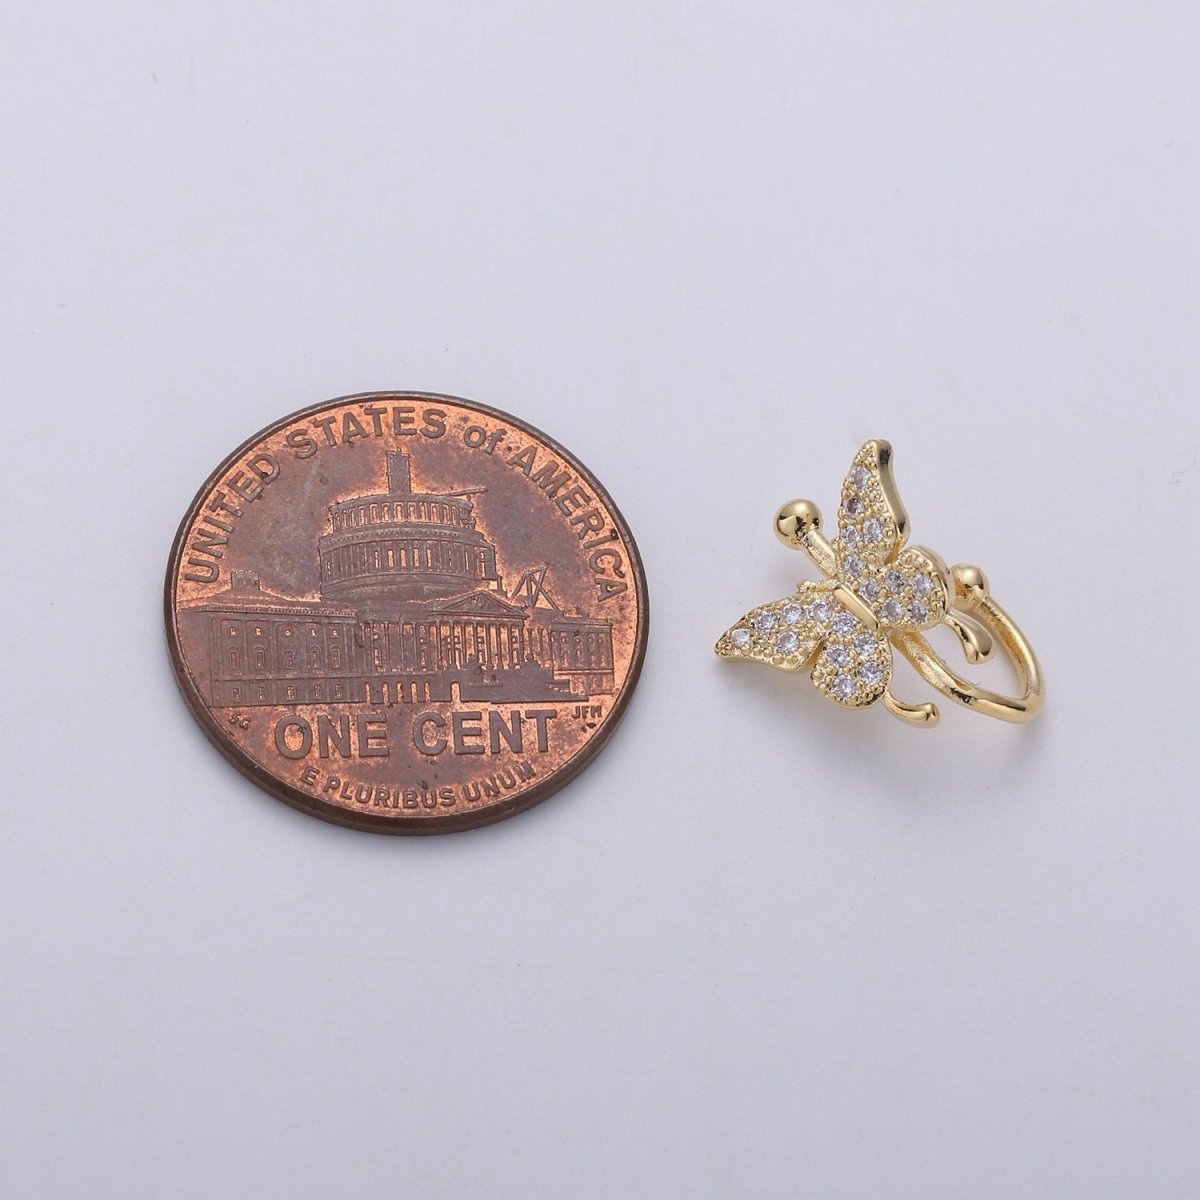 1x Butterfly Ear Cuff Ear Wraps - Butterfly Jewelry - Fake Pierced Earrings - Fake Piercing - Gifts For Teens -Teenage Girl Gift Idea, AI-117 - DLUXCA